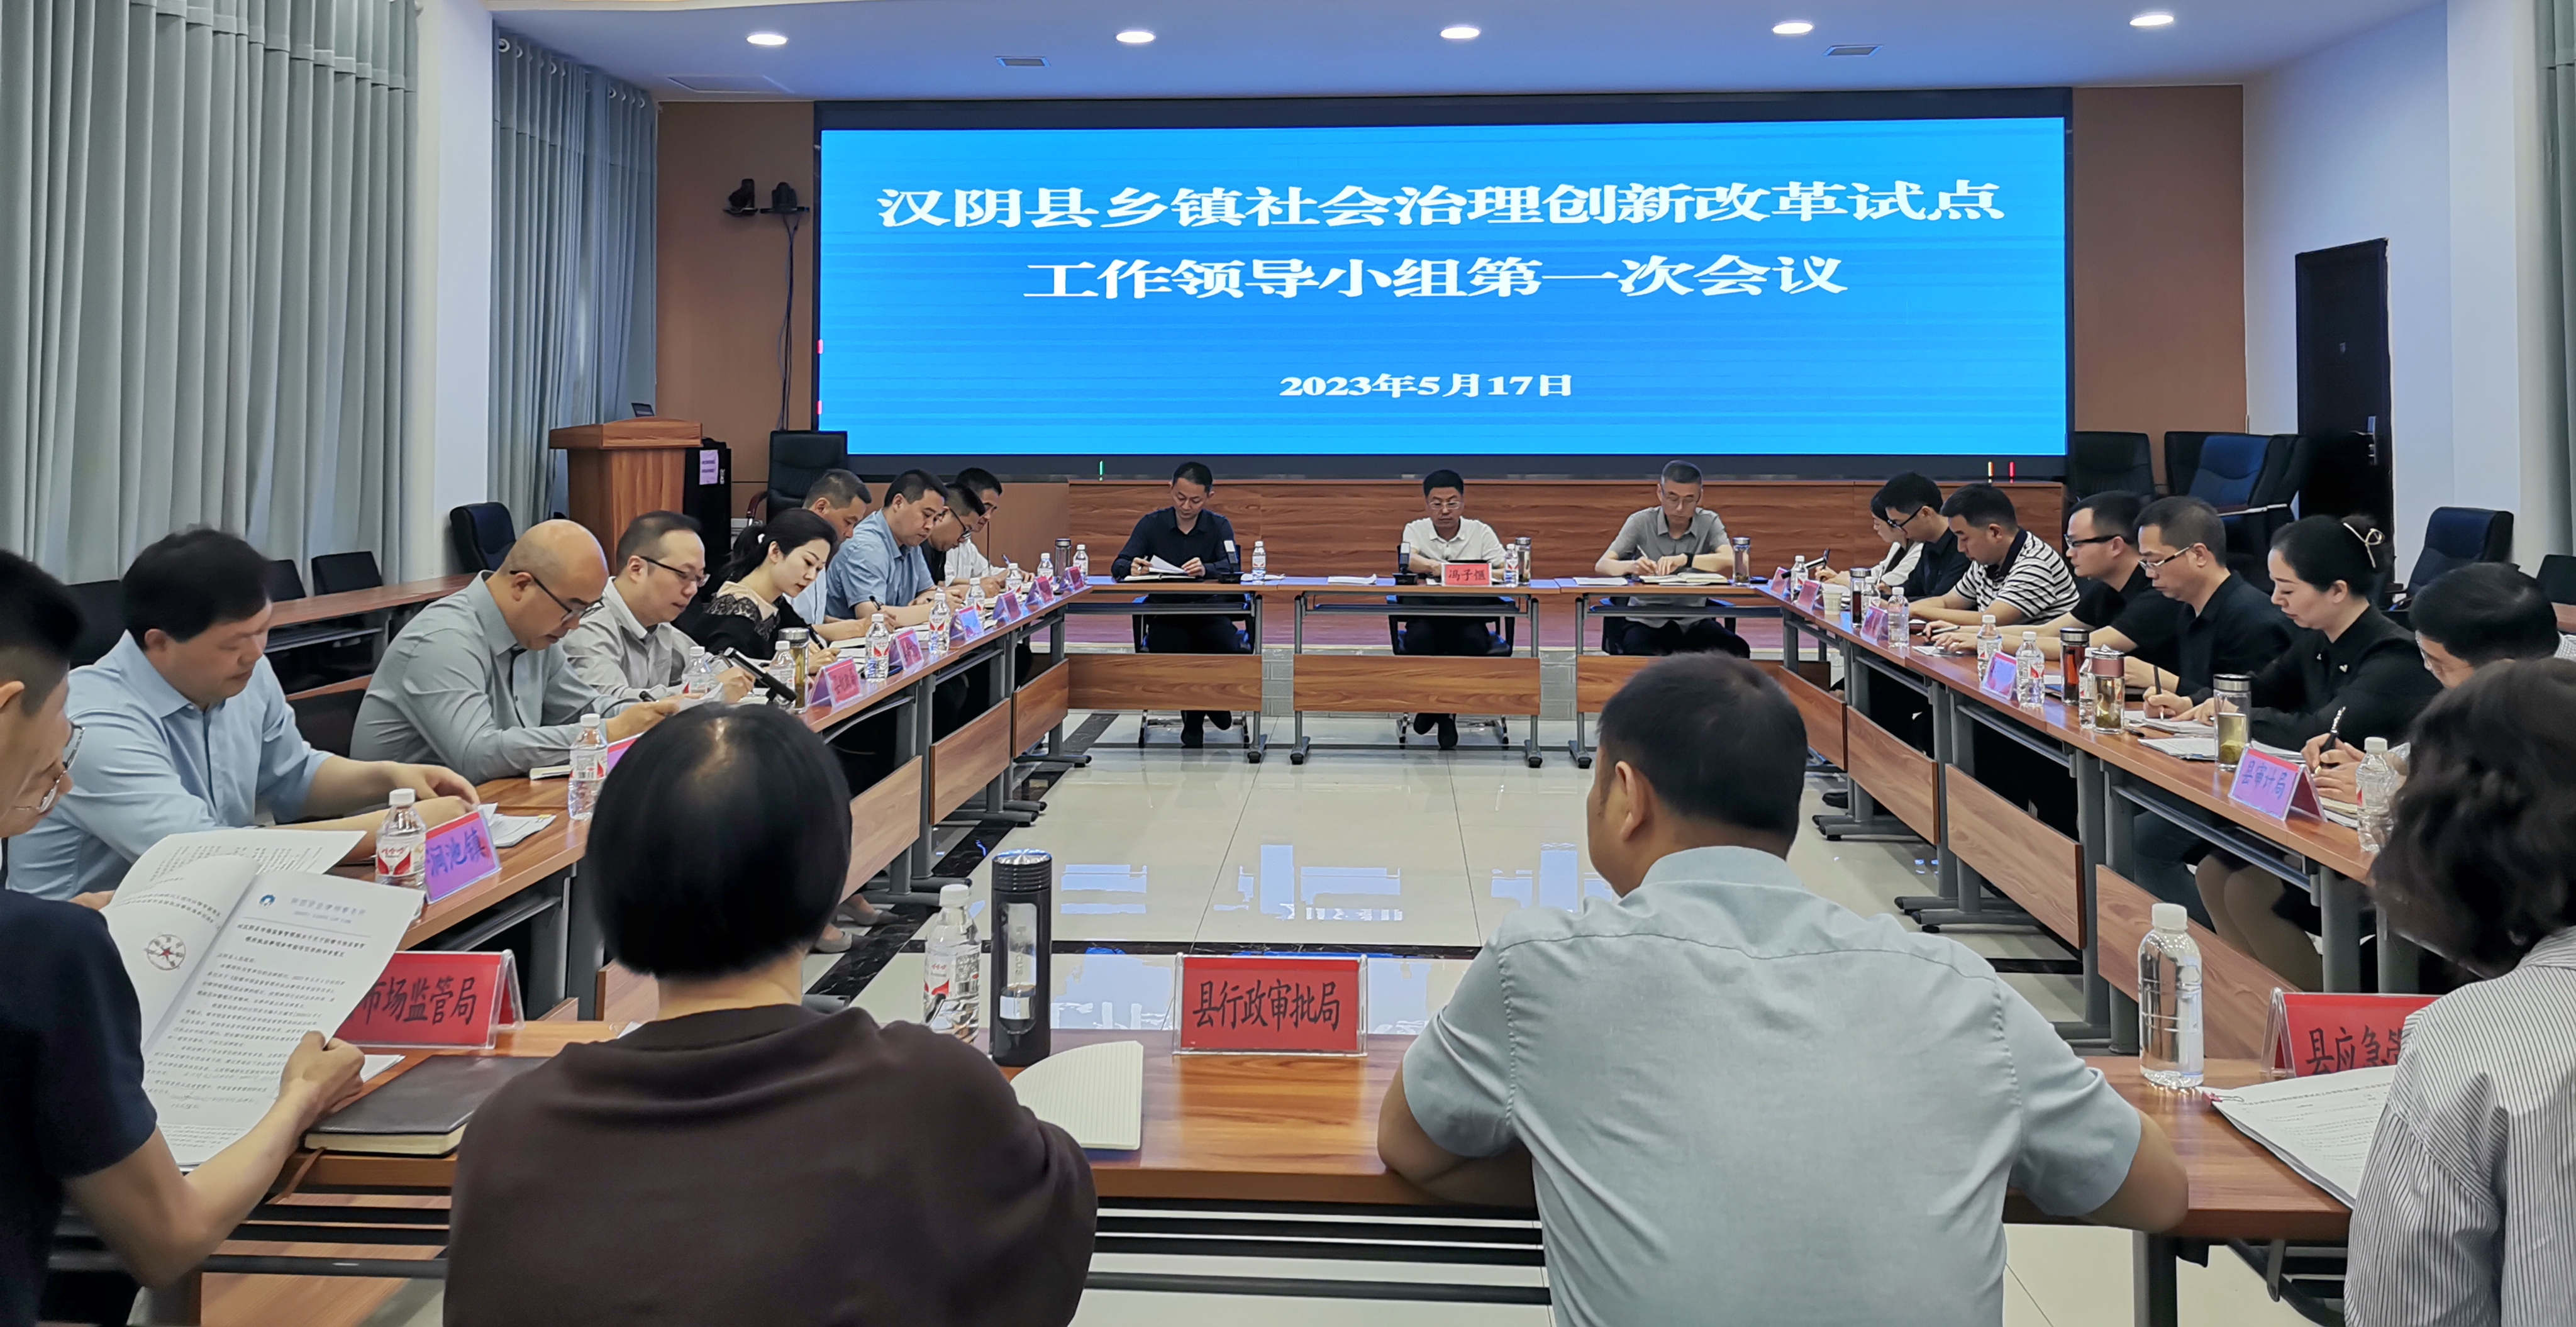 汉阴县召开专题会议审定乡镇社会治理创新改革试点配套文件